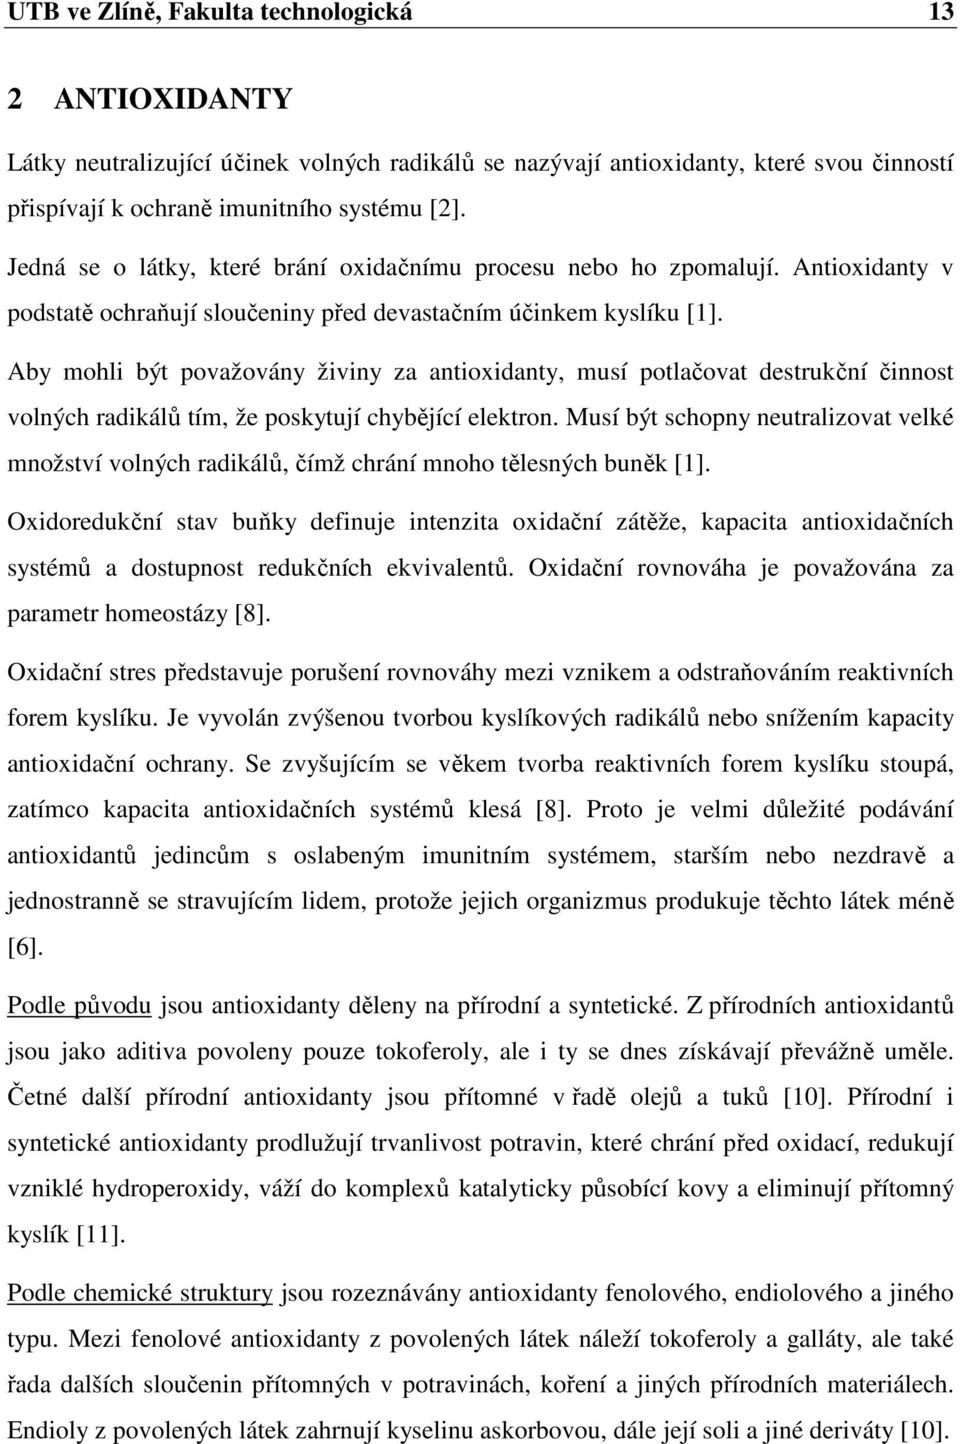 Antioxidační sloučeniny řas. Hana Fojtíková - PDF Stažení zdarma